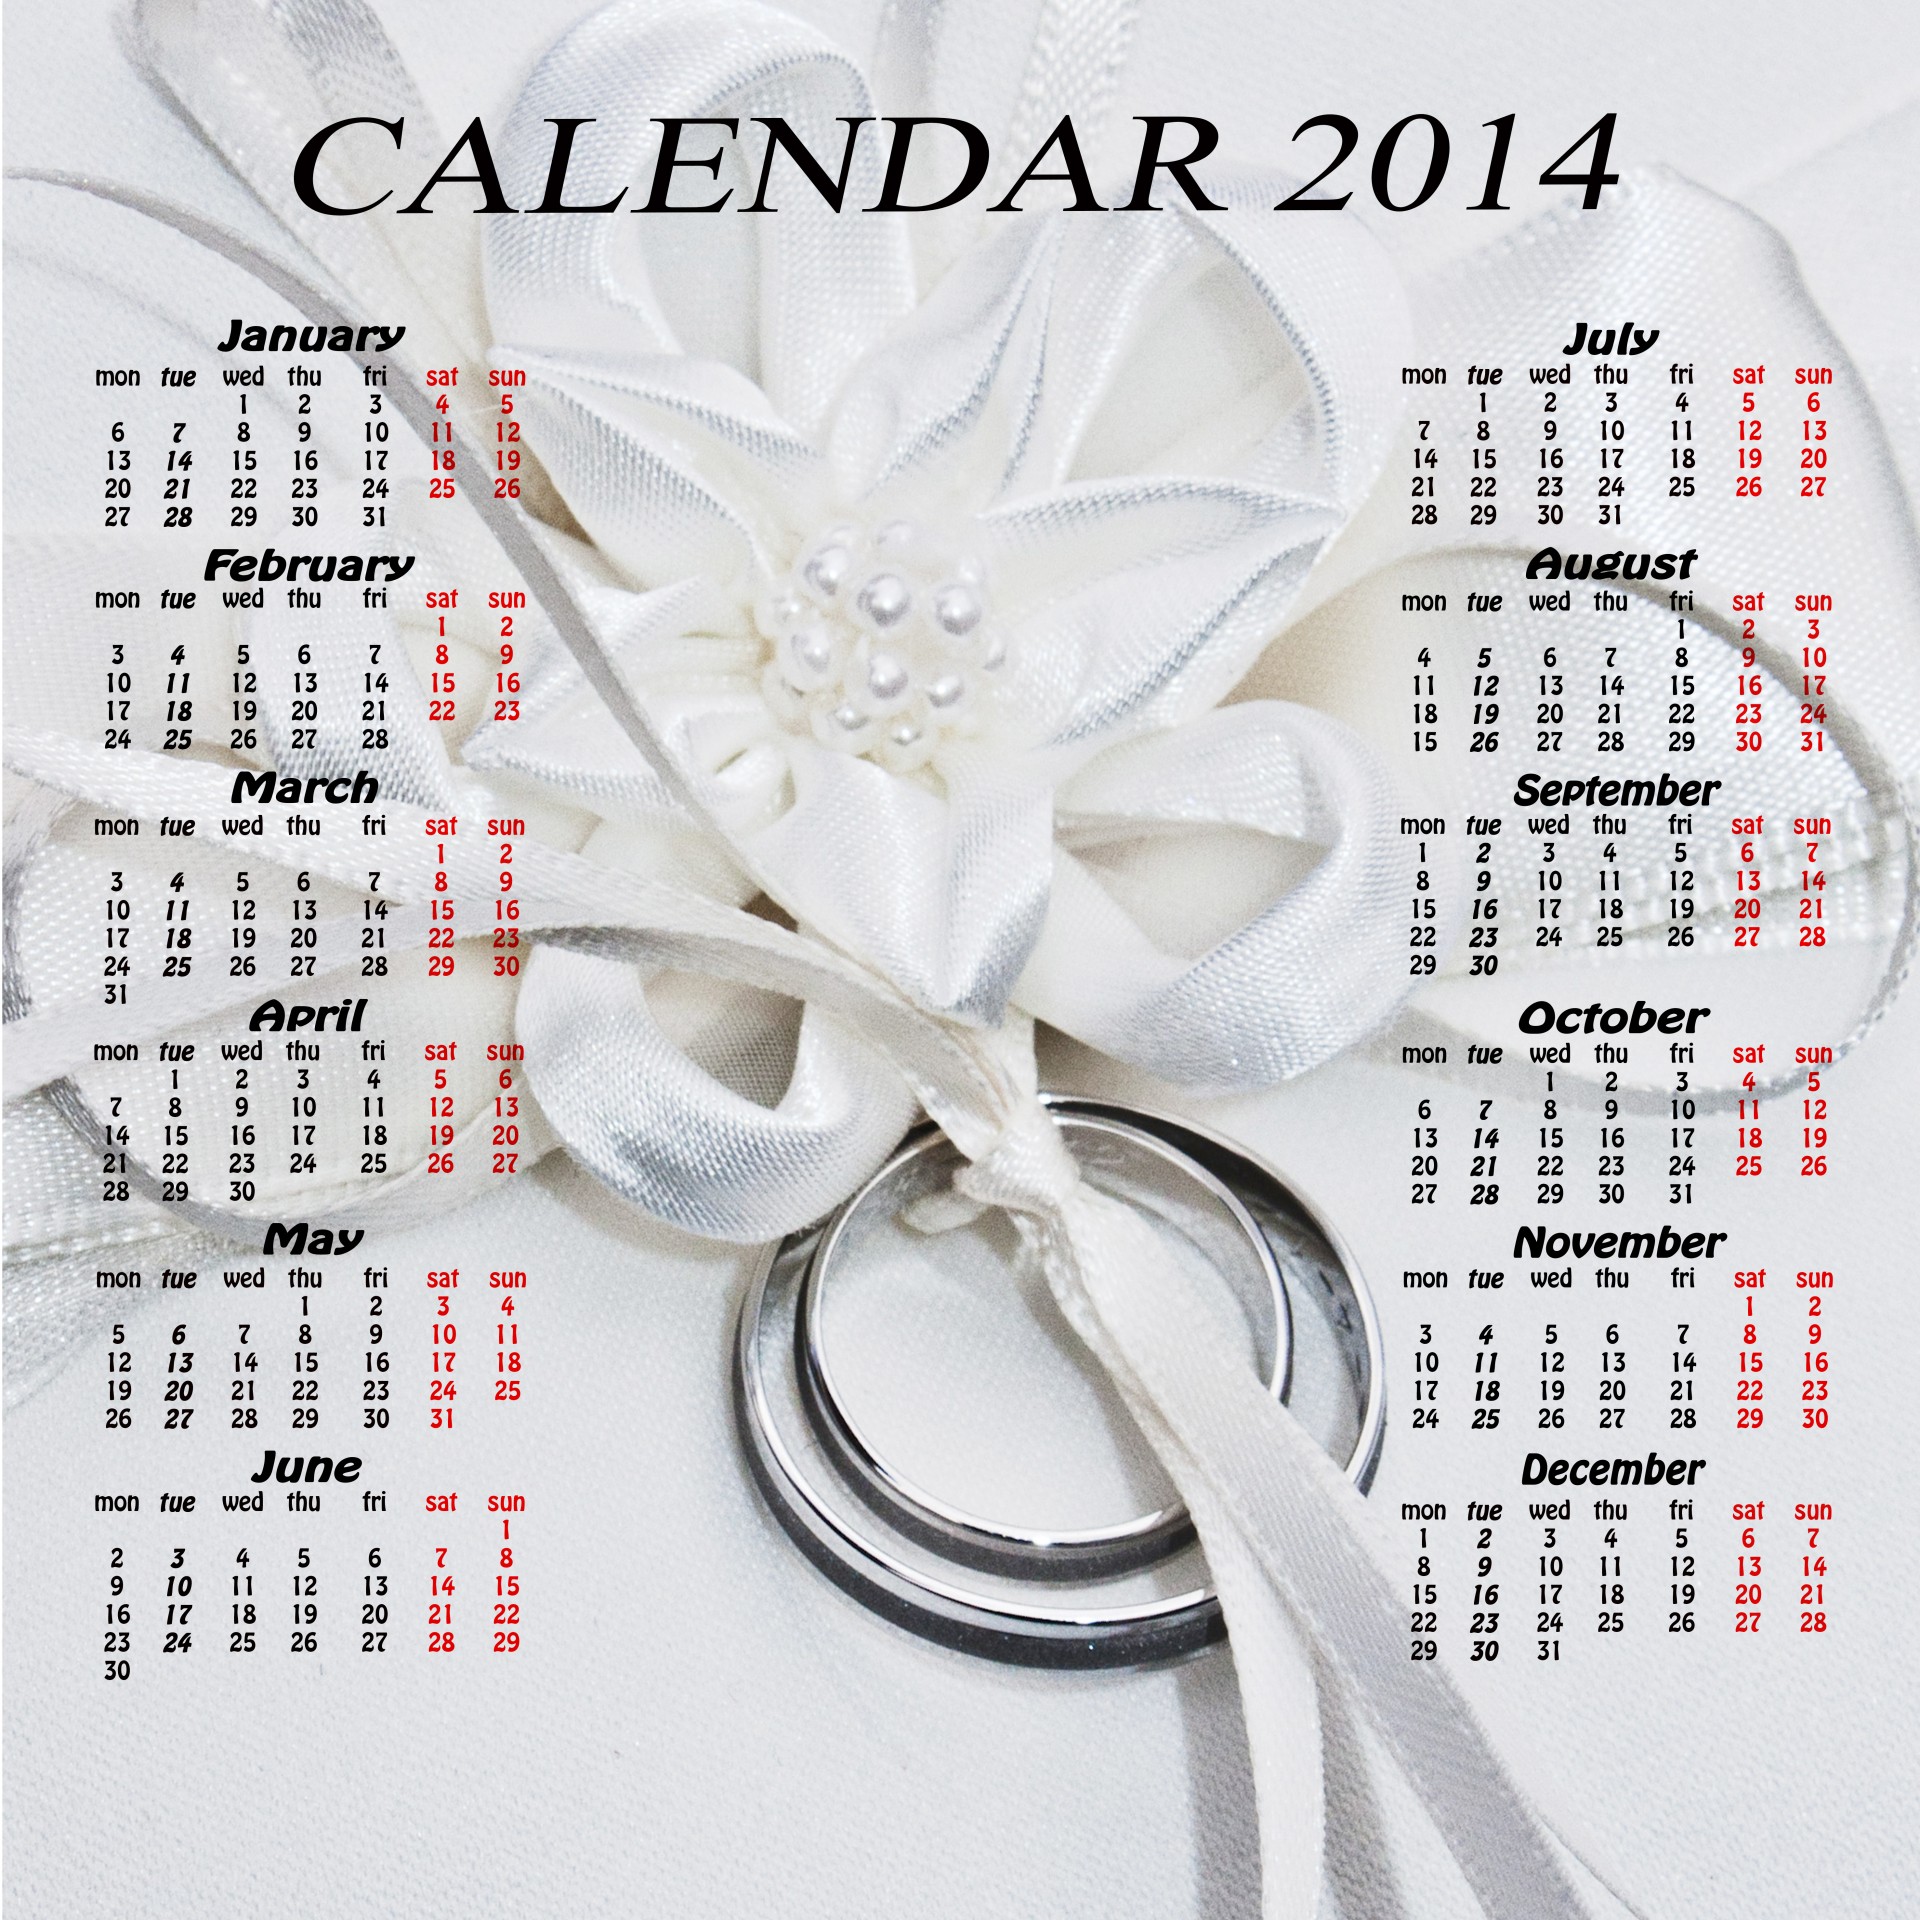 calendar 2014 calendar 2014 free photo